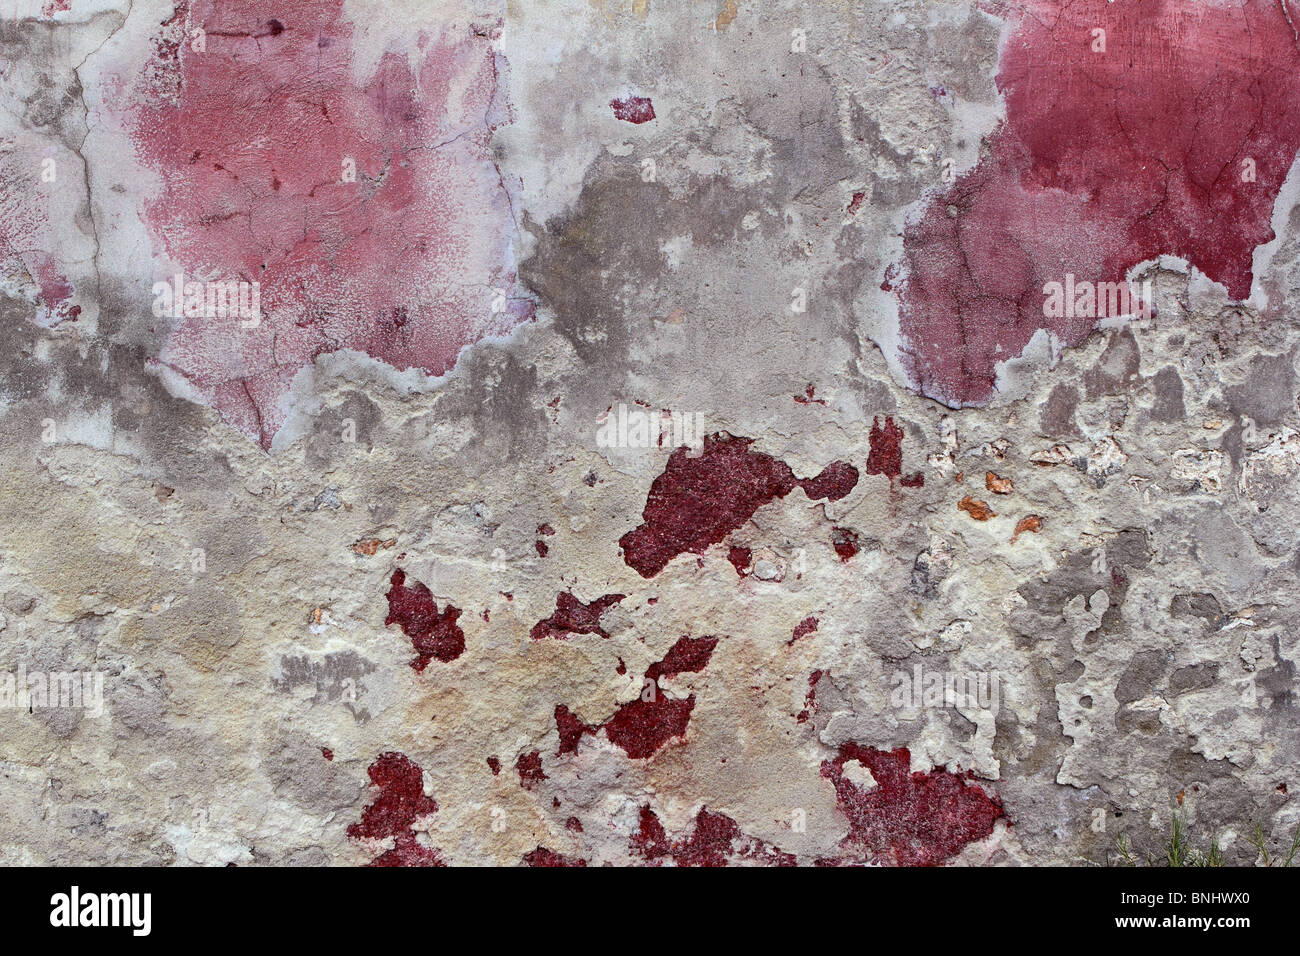 Grunge de ciment patiné rose rouge wall background Banque D'Images